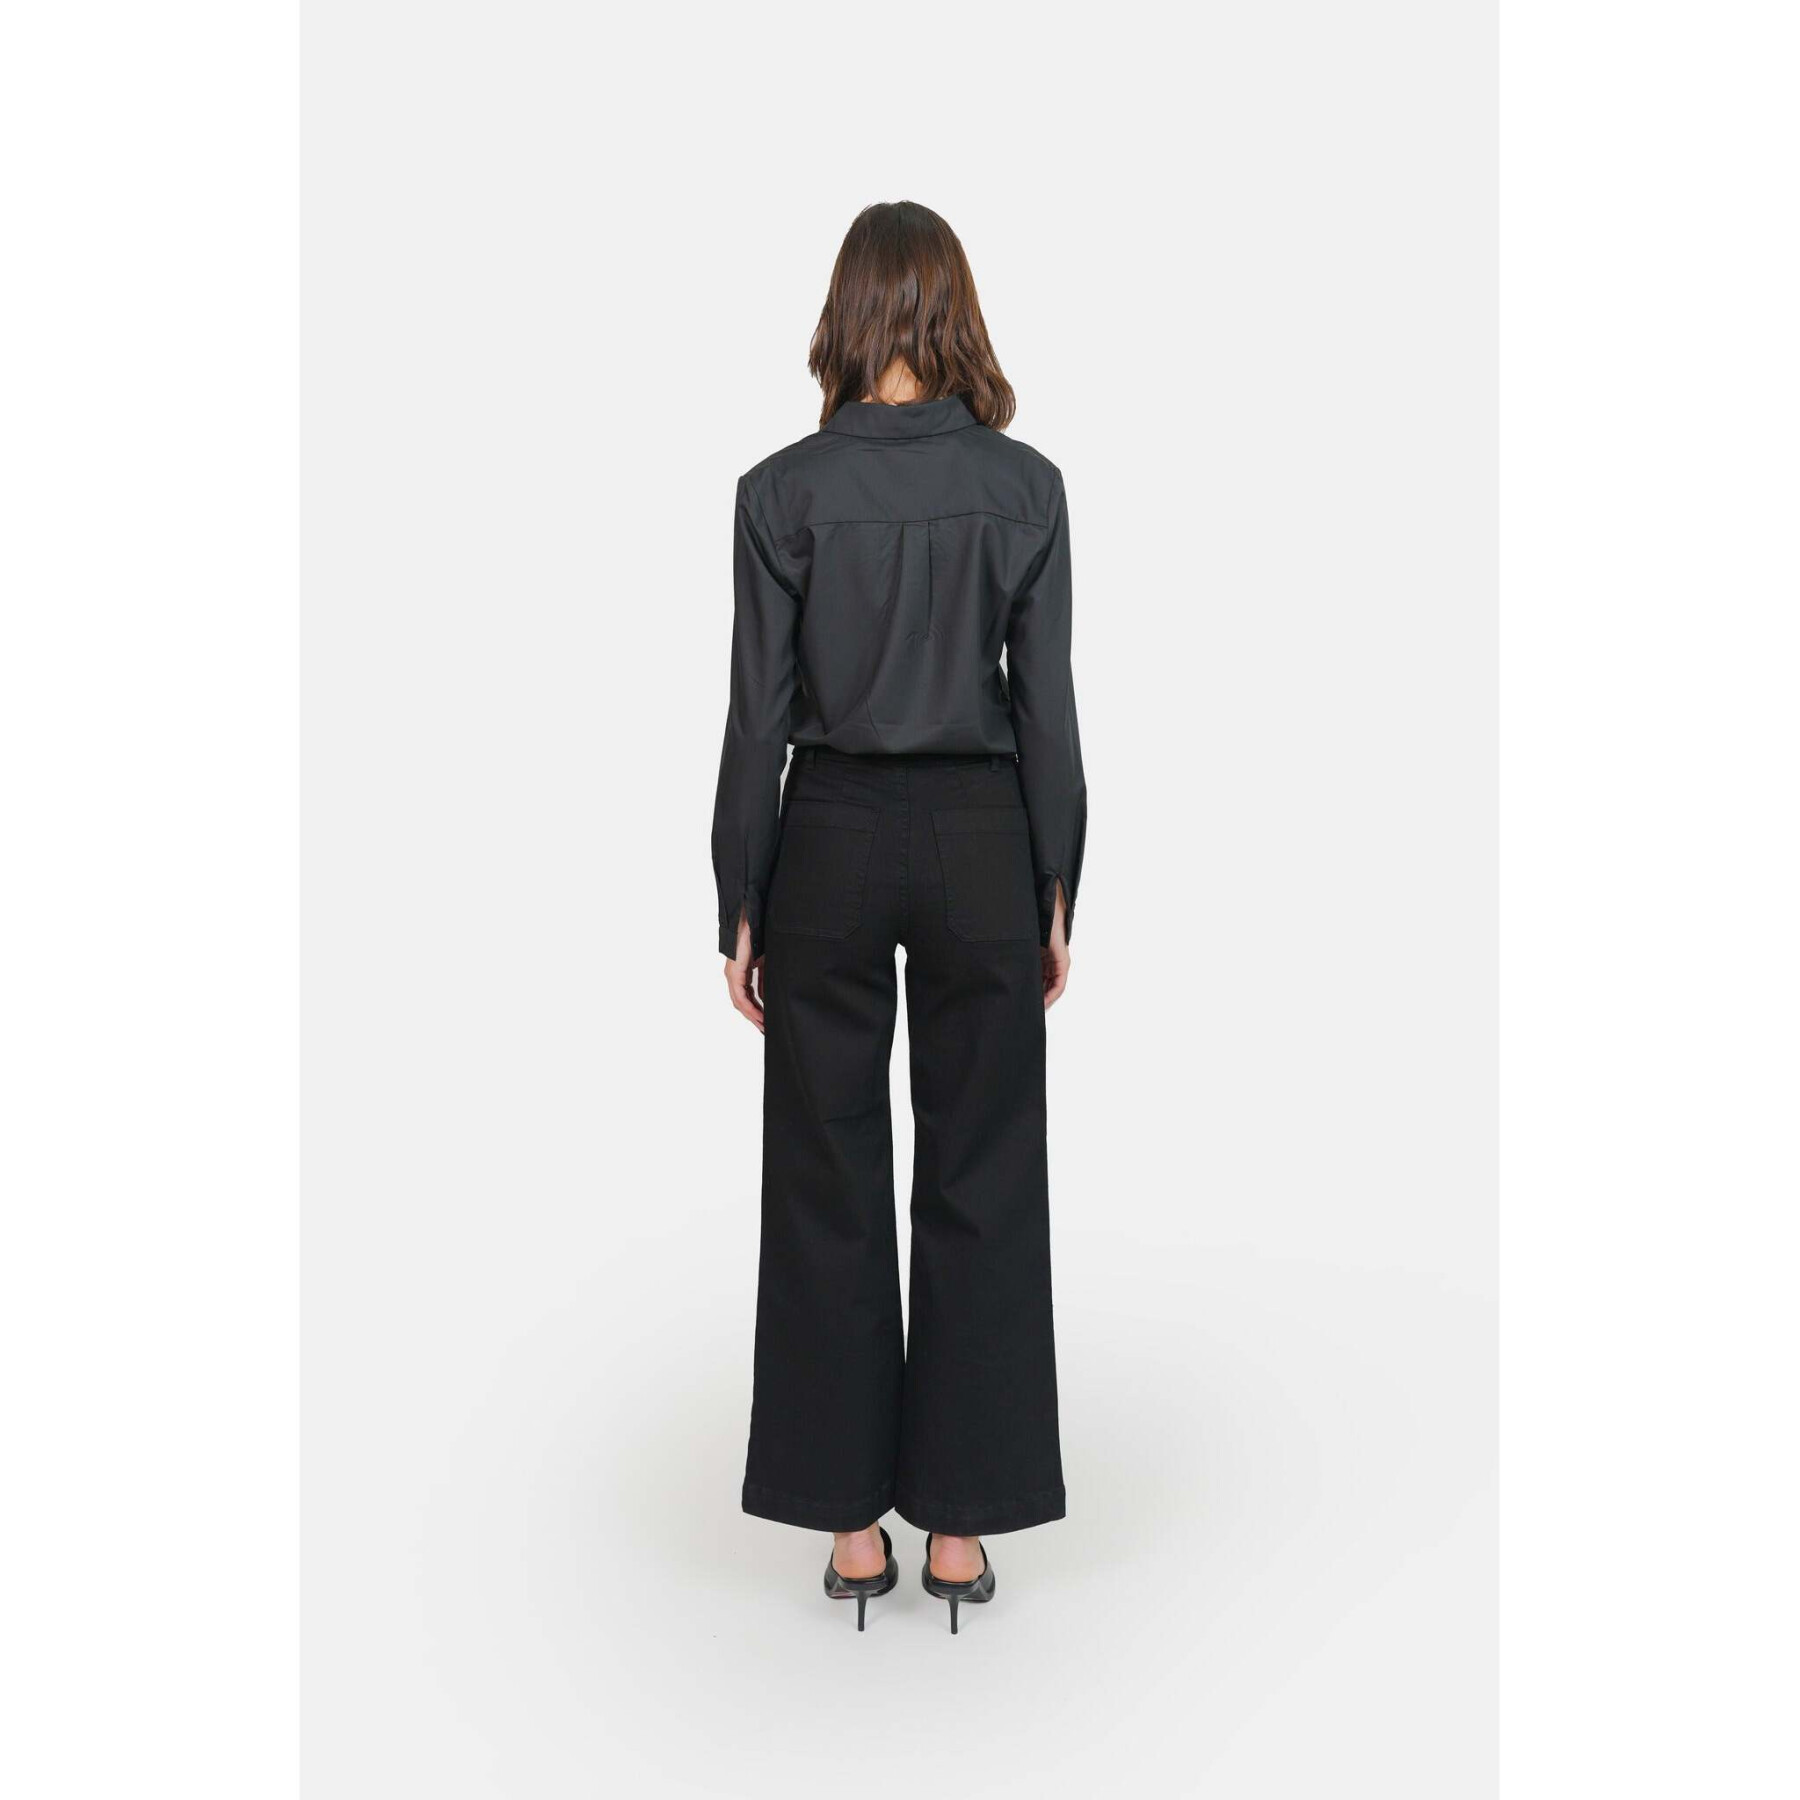 Jeans évasé noir taille haute en coton stretch femme F.A.M. Paris Fauve